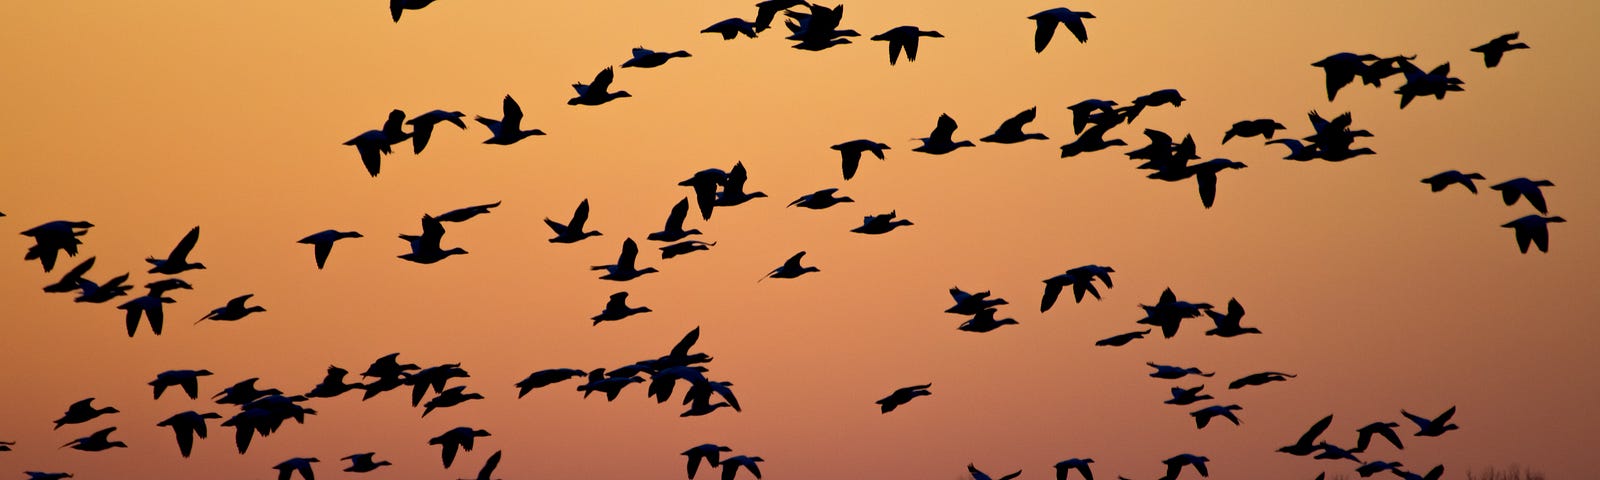 birds flying across a setting sun.